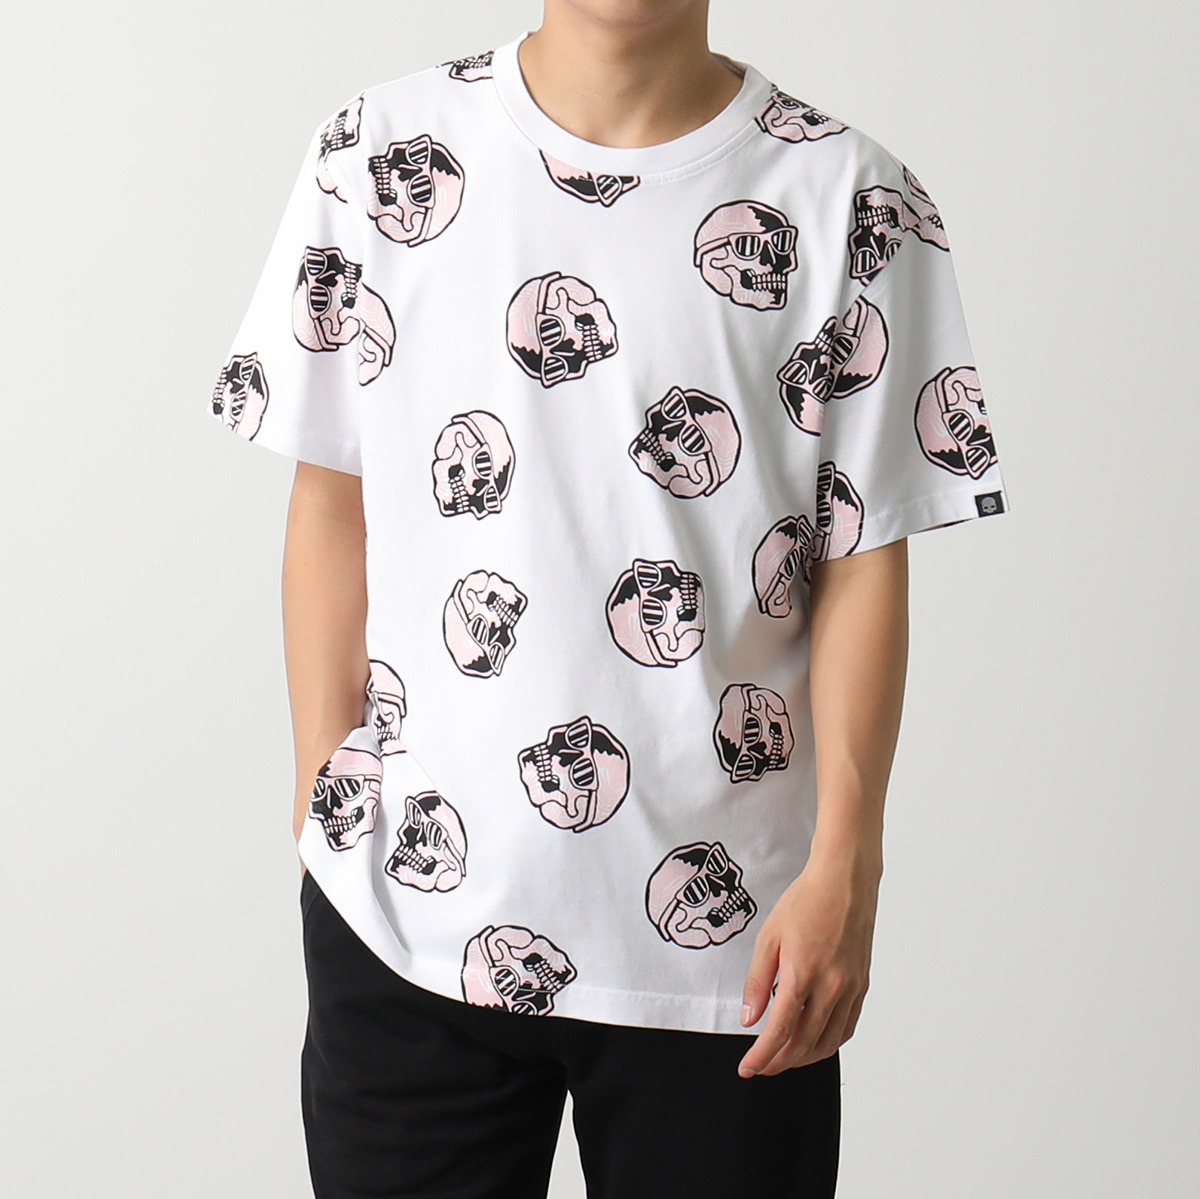 HYDROGEN ハイドロゲン 半袖 Tシャツ PALMS ALLOVER SKULL TEE 320612 メンズ クルーネック コットン スカル  カラー2色 | インポートセレクト musee